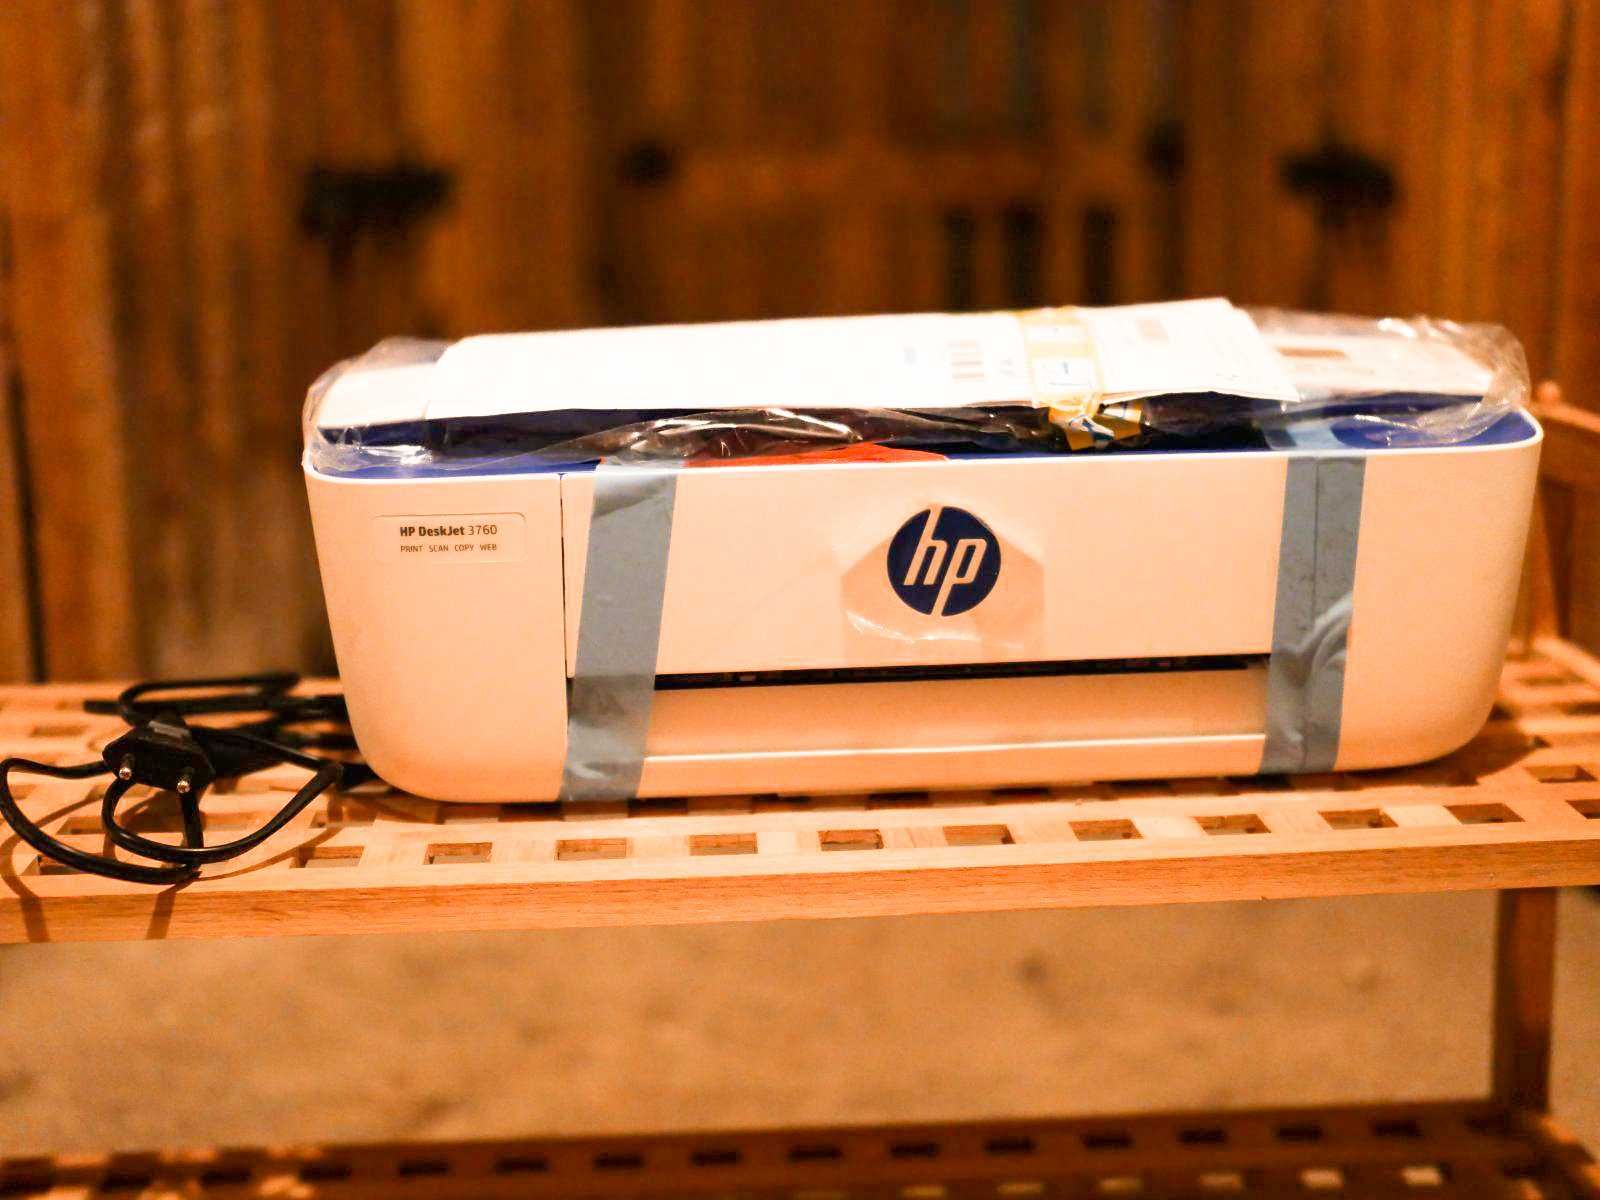 БФП HP DeskJet 3760 з wi fi принтер сканер ксерокс кольоровий